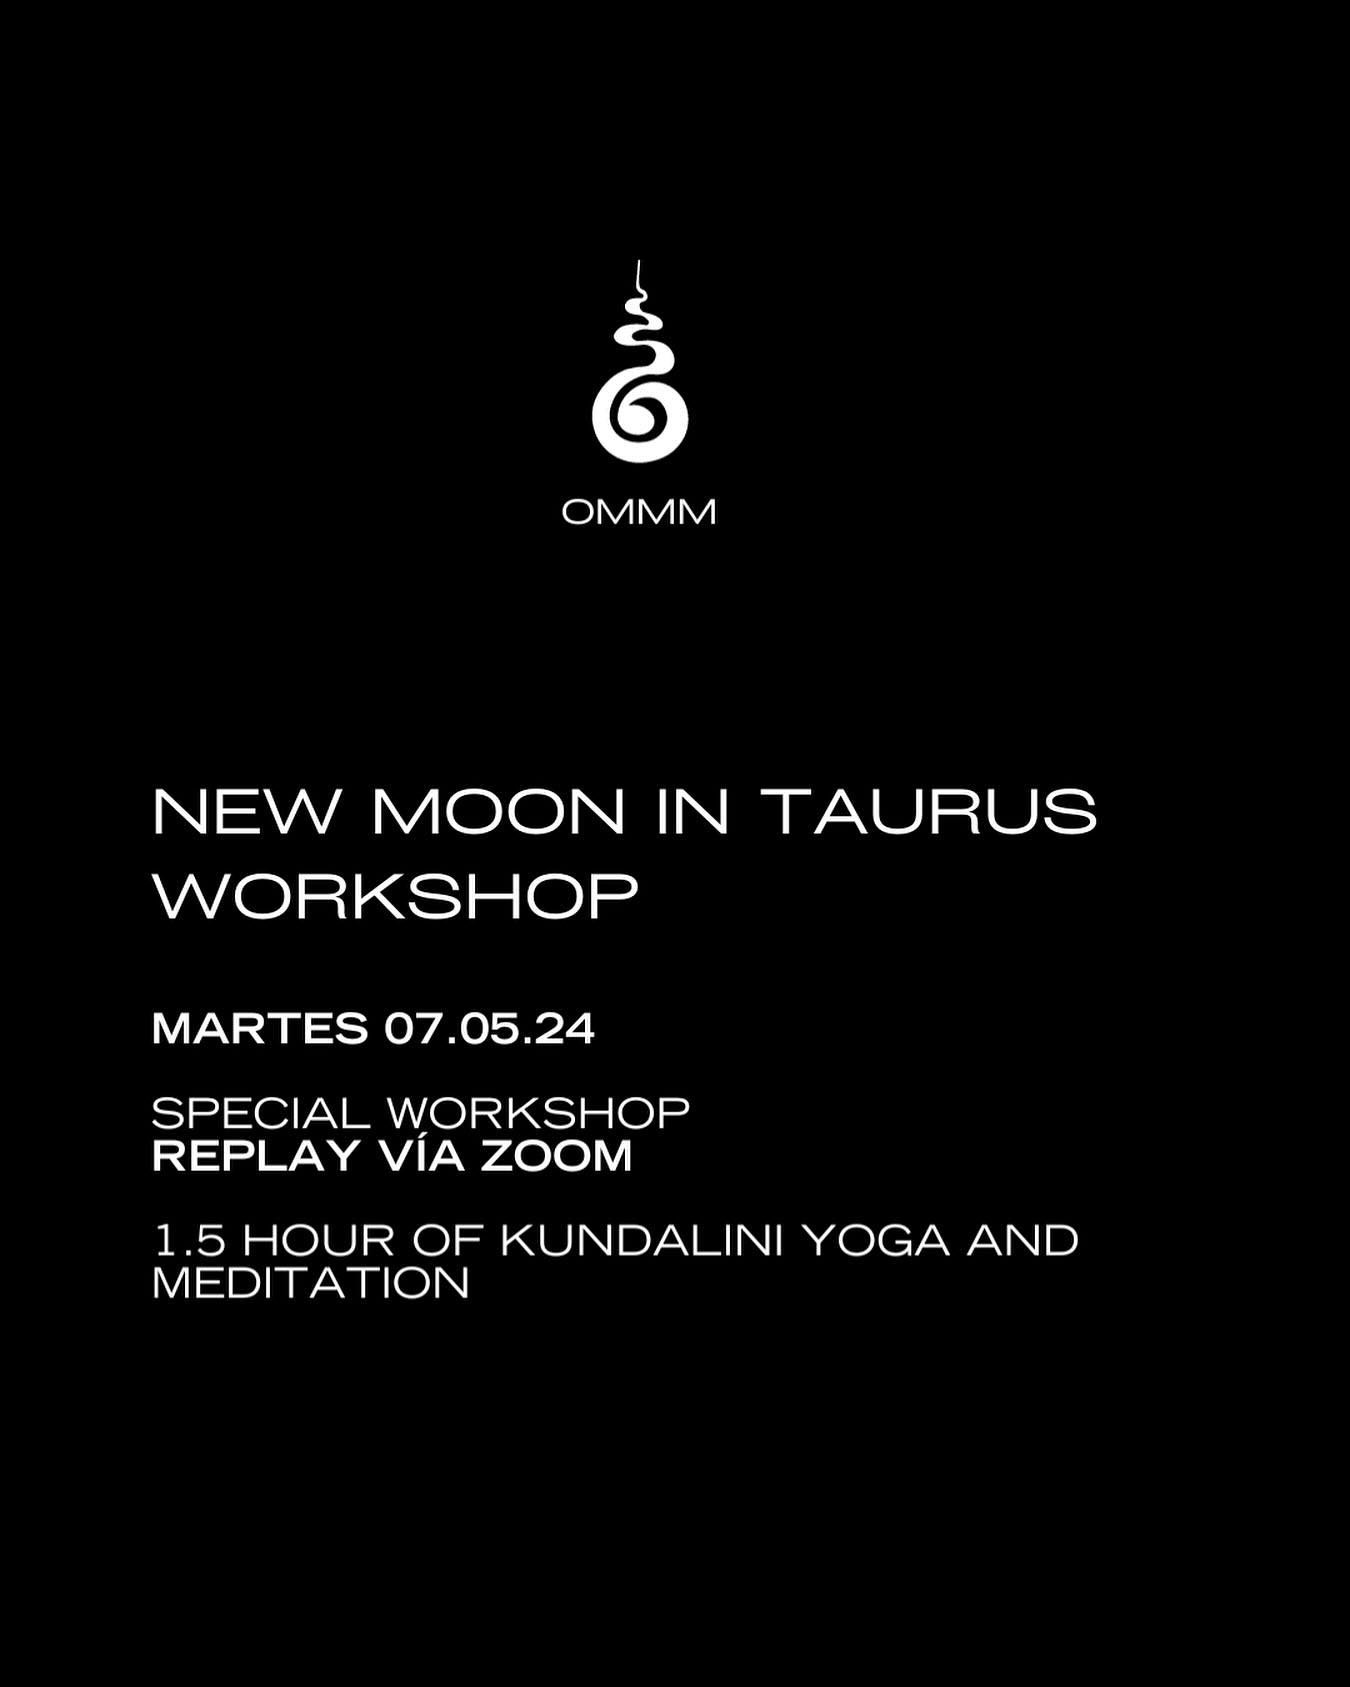 Este Martes 07 de Mayo tenemos Workshop de Luna Nueva en Tauro y daremos inicio a OMMMprogram Intuici&oacute;n✨

Separa tu lugar para cualquiera de los dos programas:
www.ommmprogram.com/shop